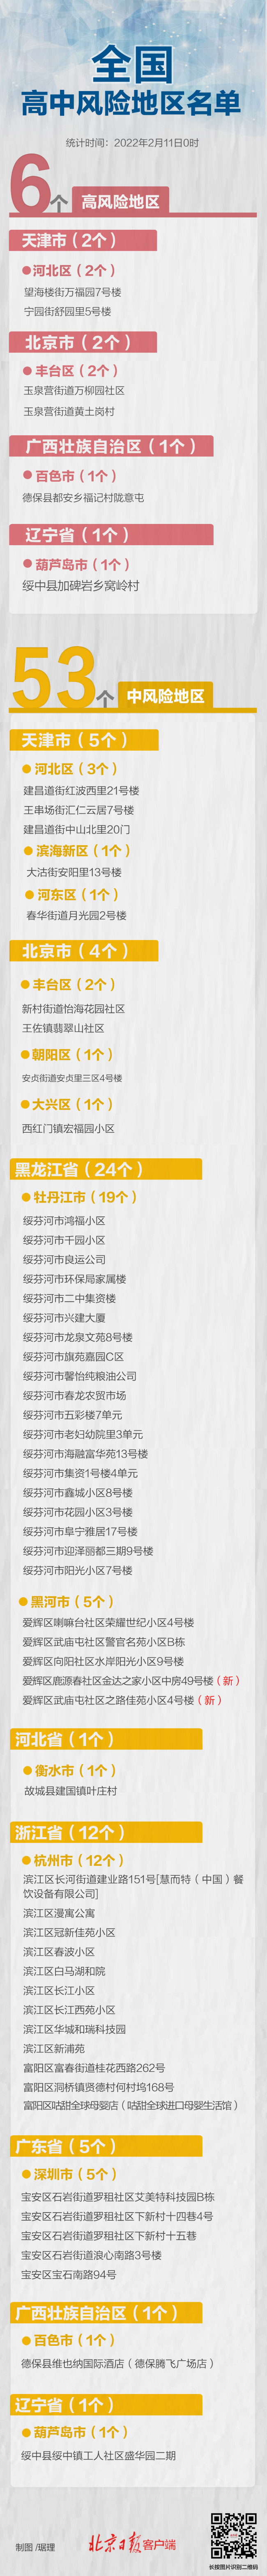 上海昨日新增本土“2+2”，均在隔离管控中发现 - Peraplay Gaming News - Peraplay Gaming 百度热点快讯